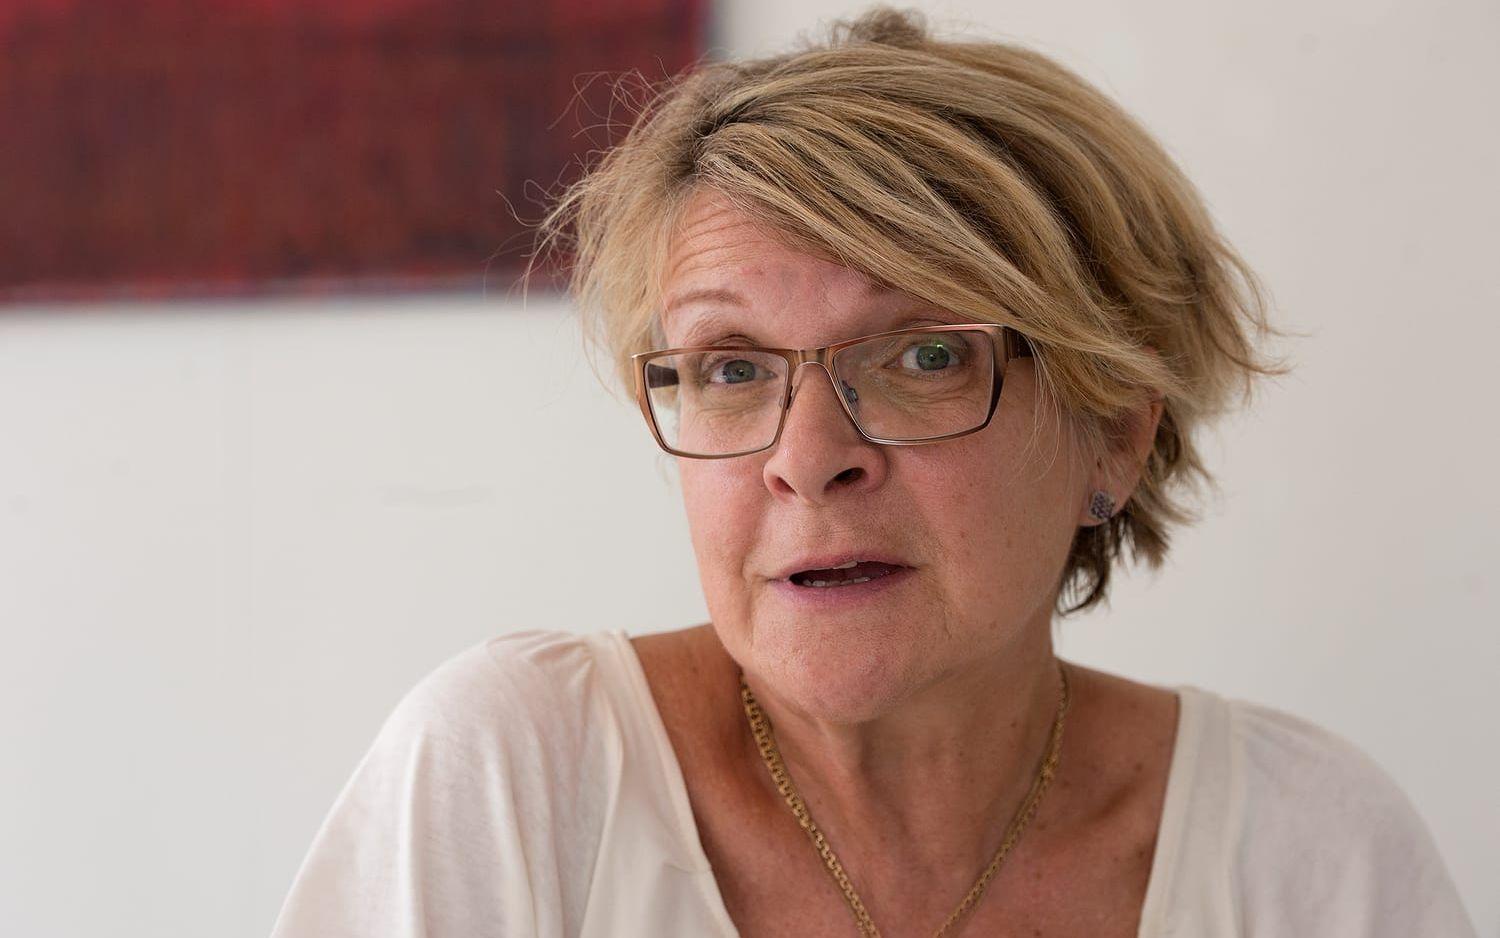 Samhällskritik. I Elisabeth Schlyter Olssons konst tar samtiden plats. "Mycket av min konst handlar om det jag ser omkring mig i samhället, målade i klara färger", säger hon.